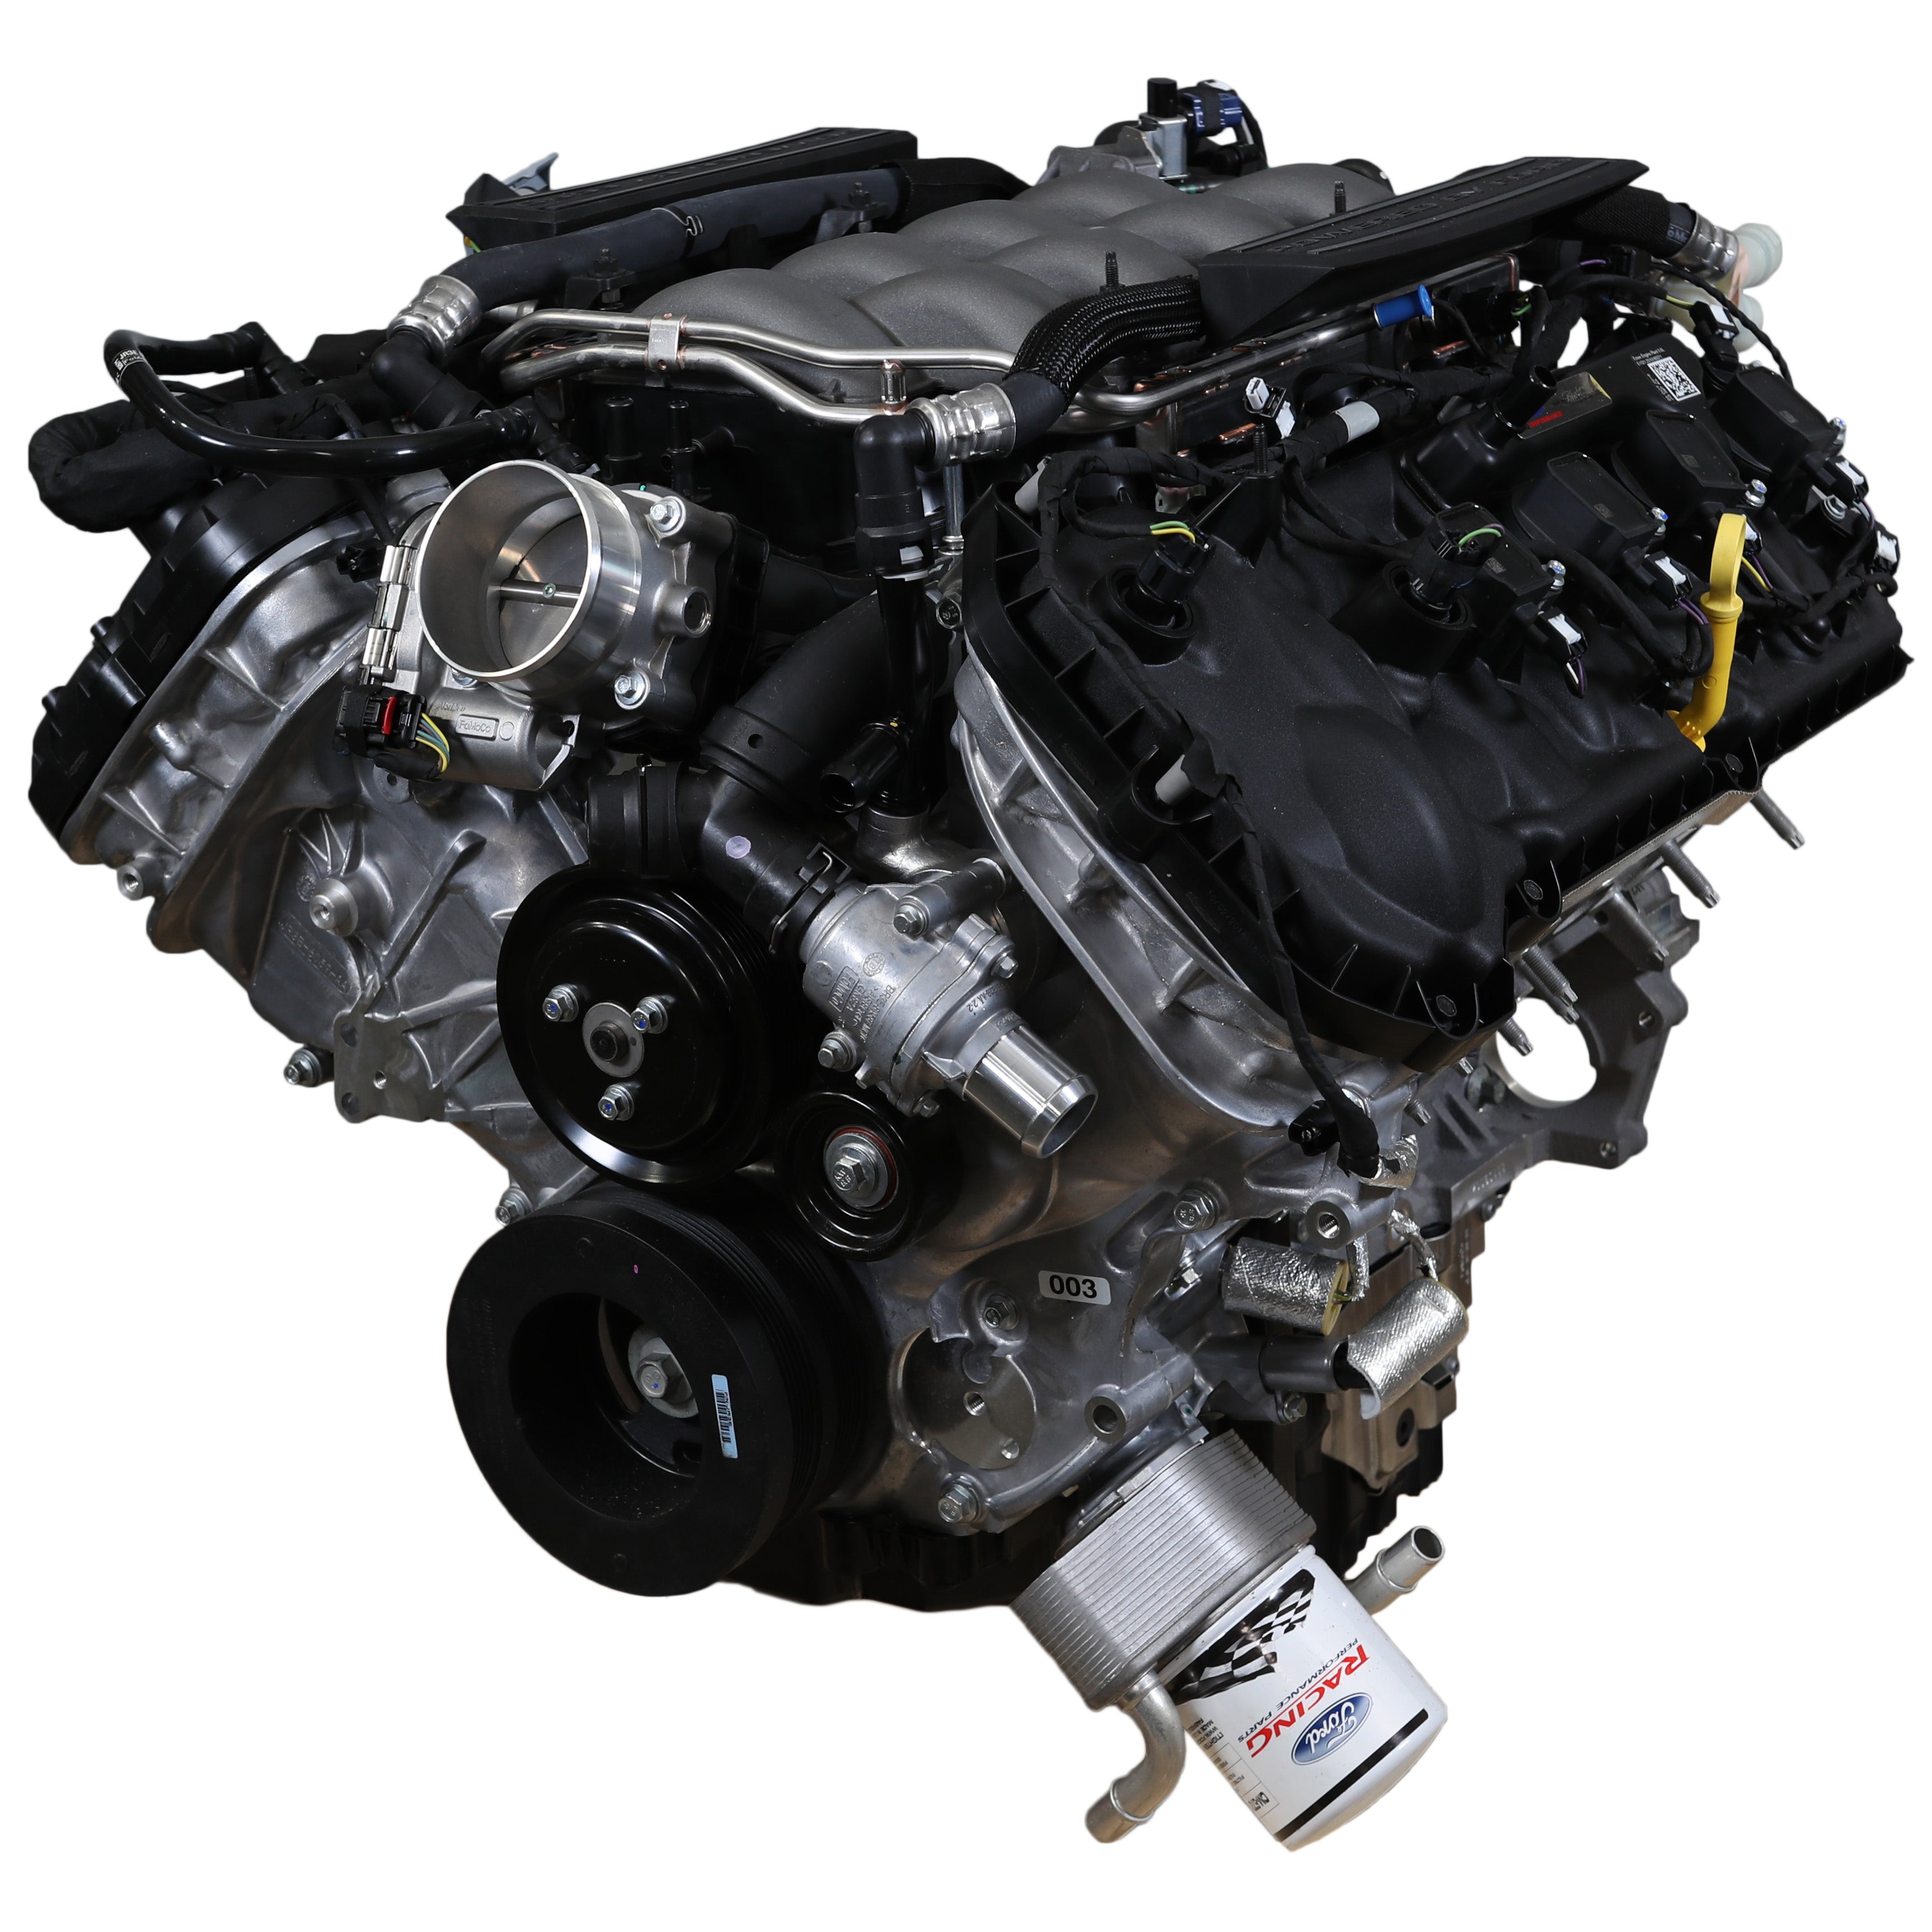 Κινητήρας Ford Performance 5.0L "Aluminator" Gen 3 Crate